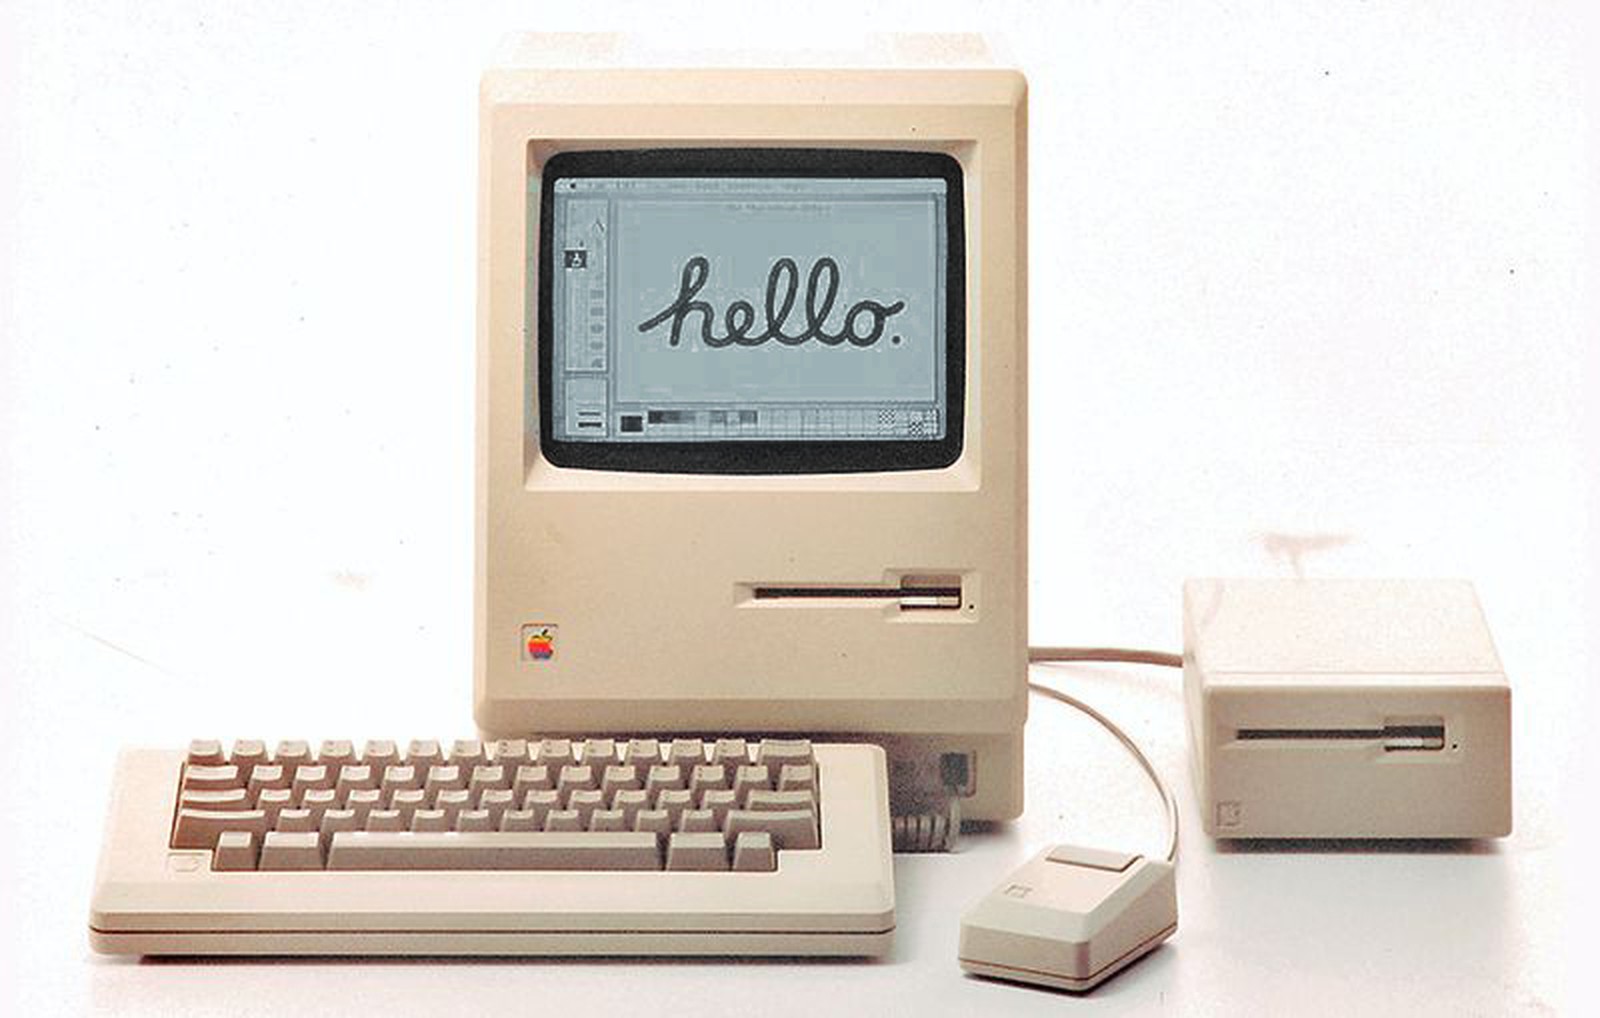 The original Macintosh computer. Super inspiring for me.